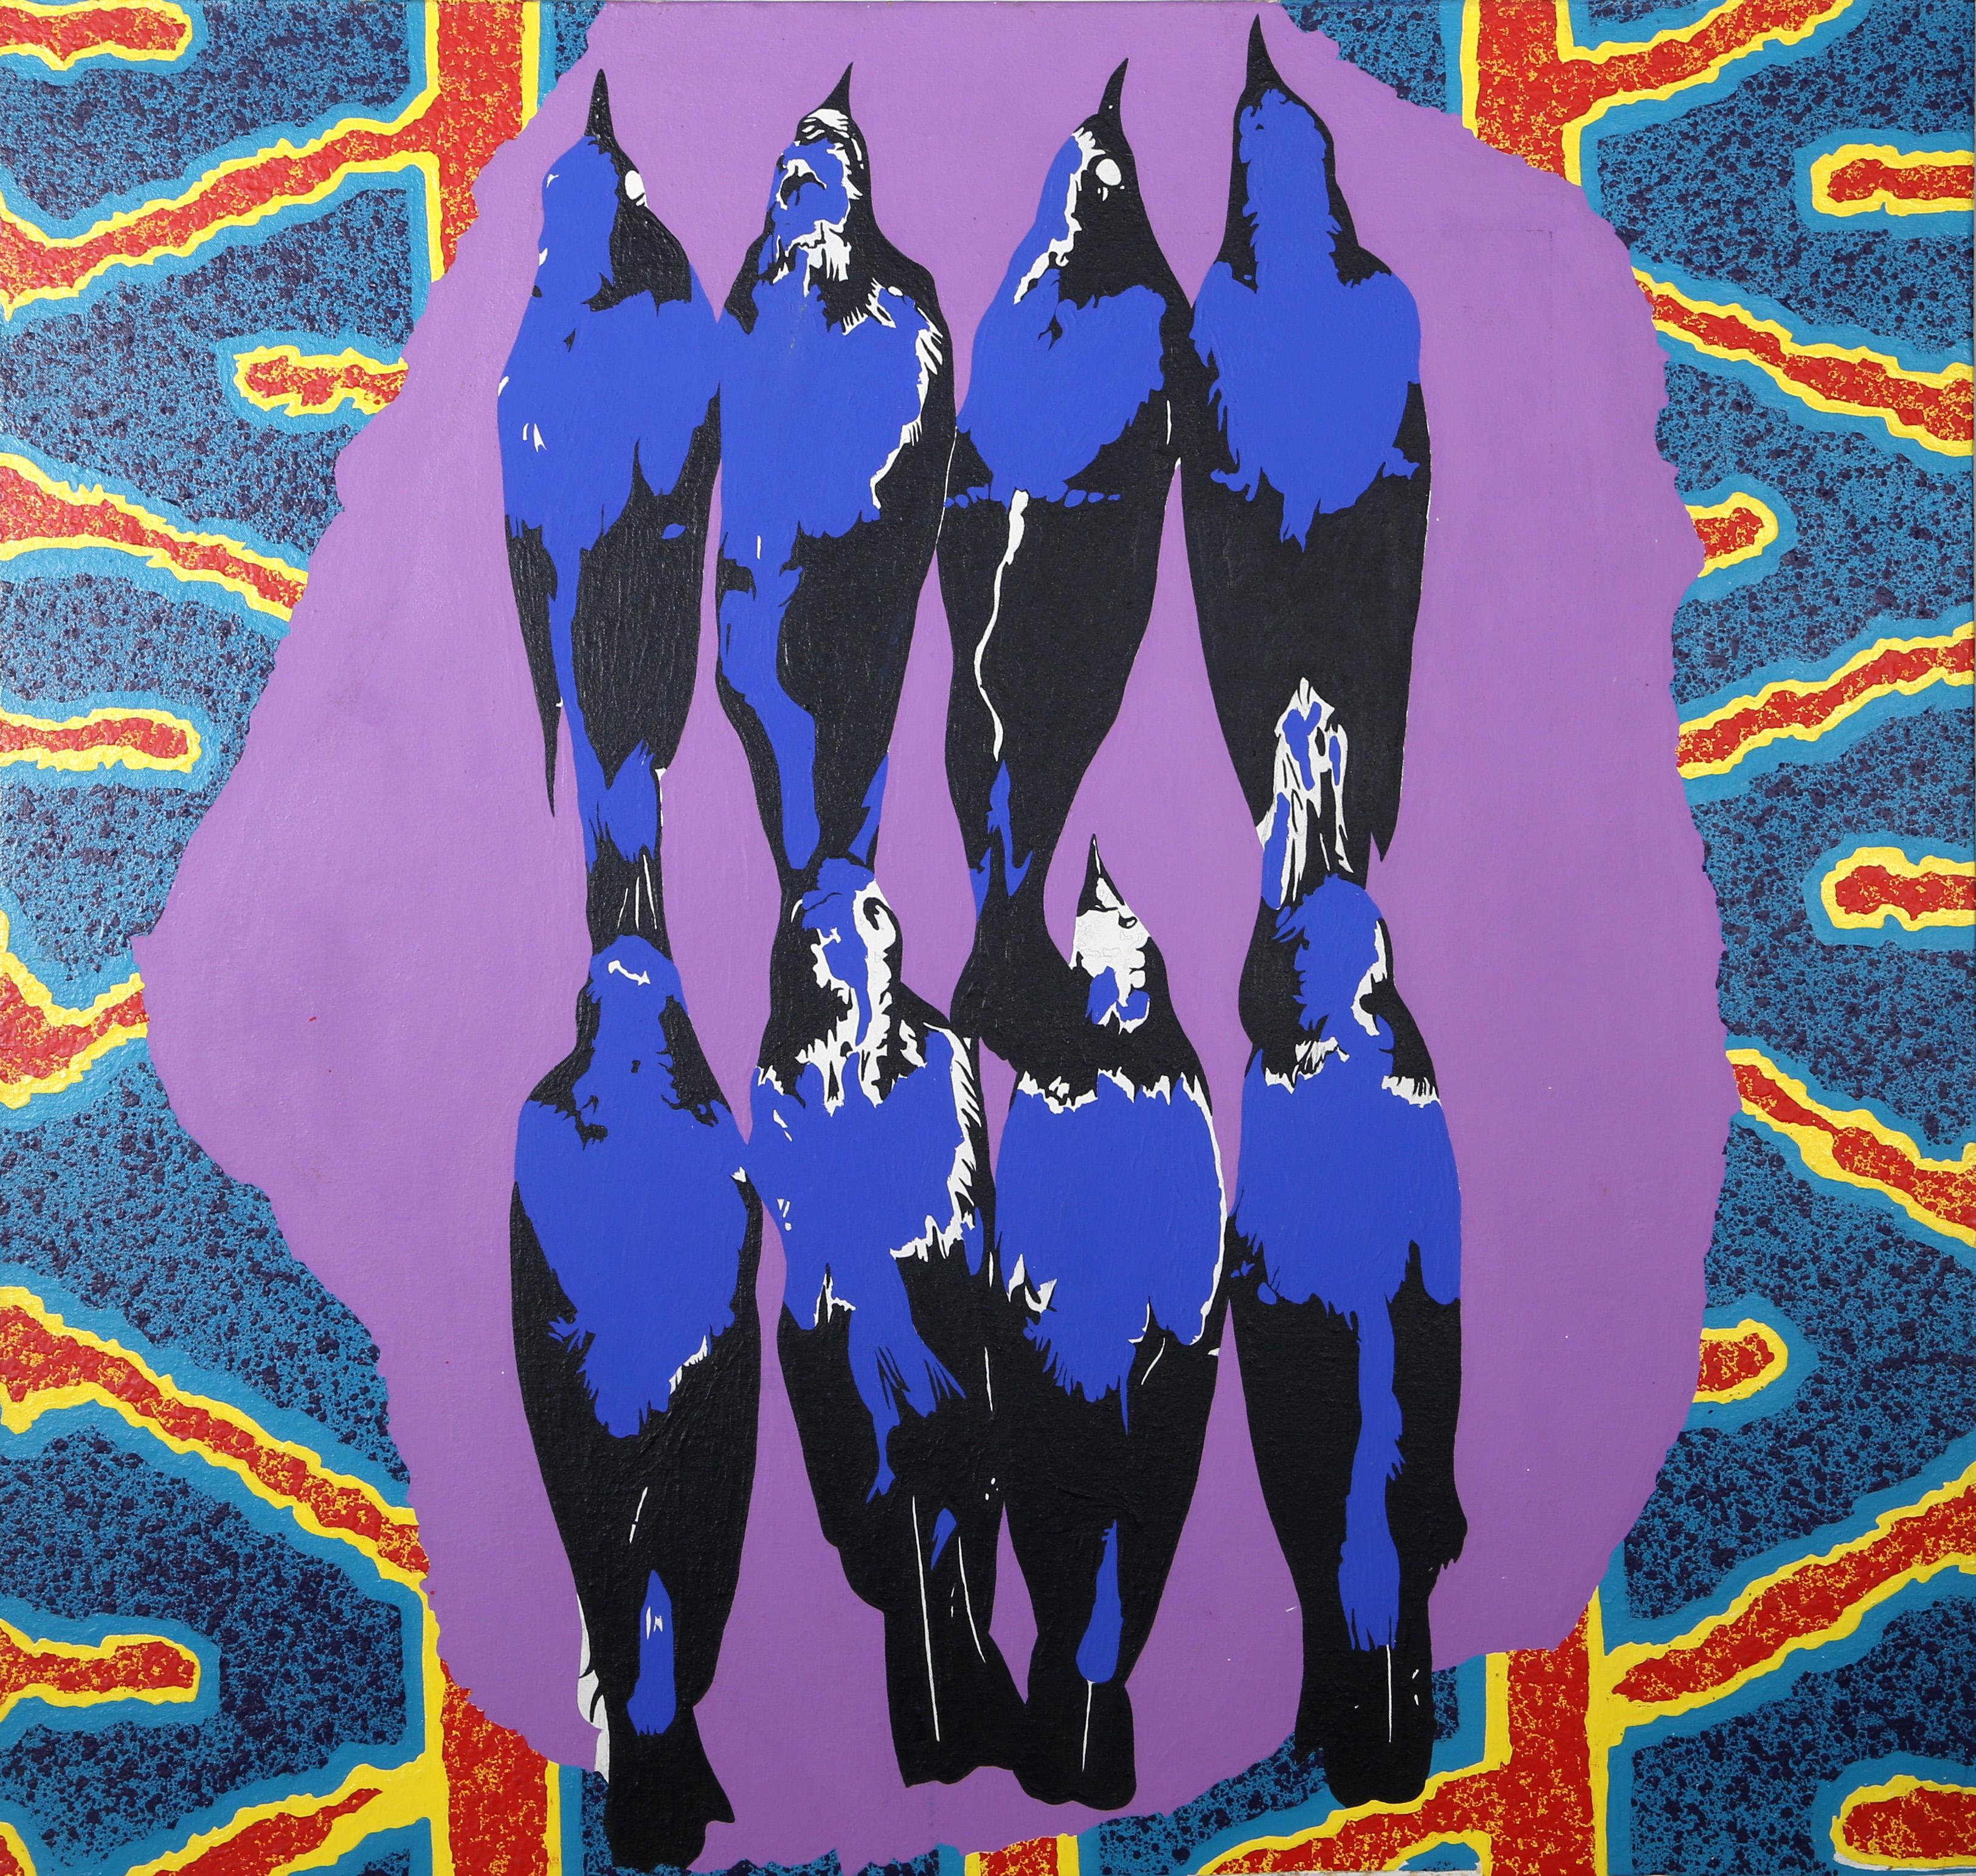 Sauver nos âmes
Michael Knigin, Américain (1942-2011)
Date : vers 1992
Acrylique sur toile
Taille : 38 x 40 in. (96.52 x 101.6 cm)

Huit corbeaux bleu électrique sont alignés en deux rangées sur un fond psychédélique et néon. Il s'agit d'une